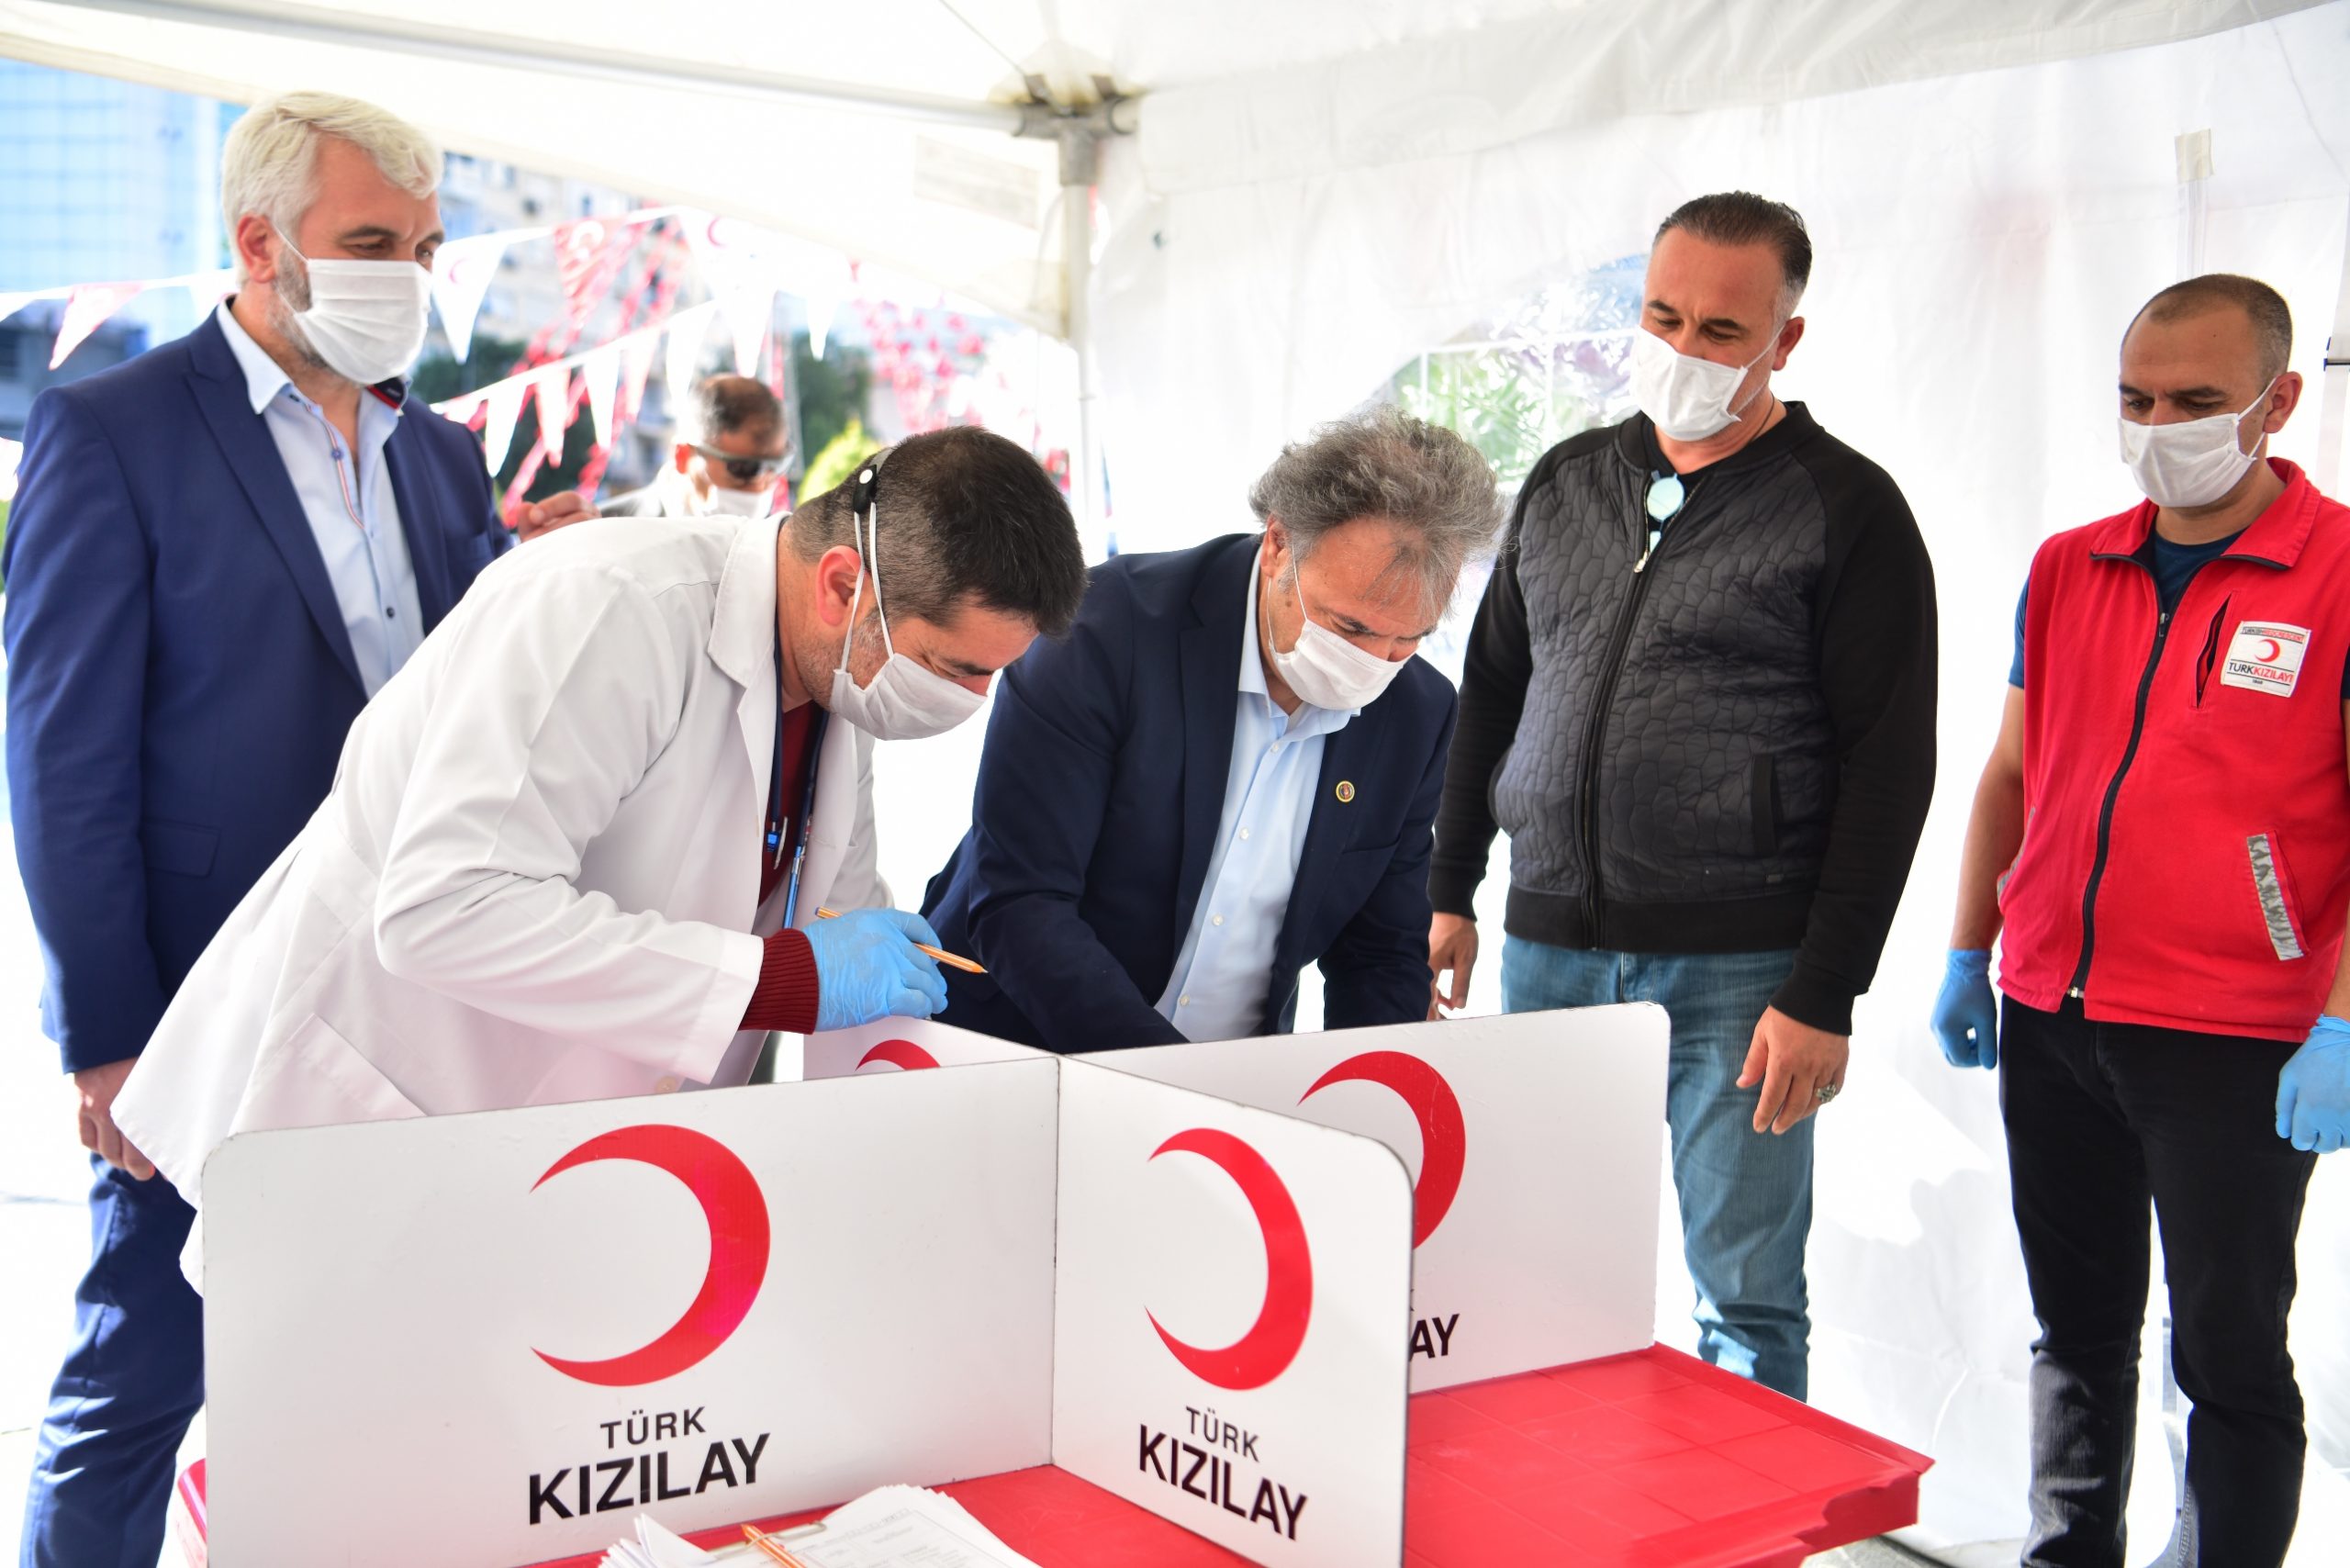 Bornova Belediyesi ve Türk Kızılay’dan ortak bağış kampanyası